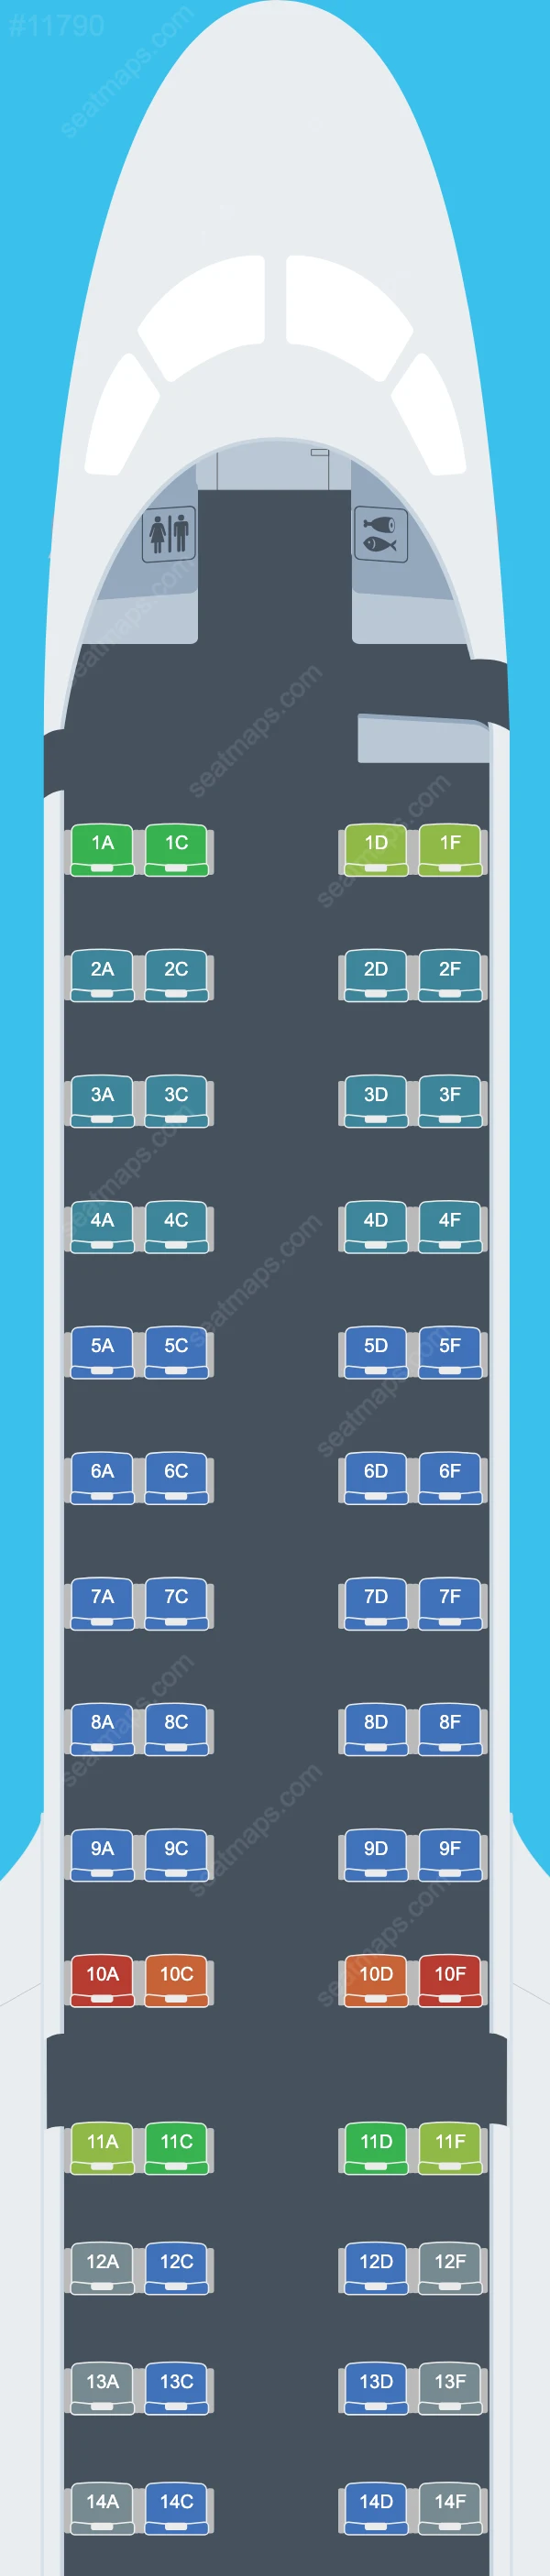 Схема салонов Scoot в самолетах Embraer E190-E2 E190 E2